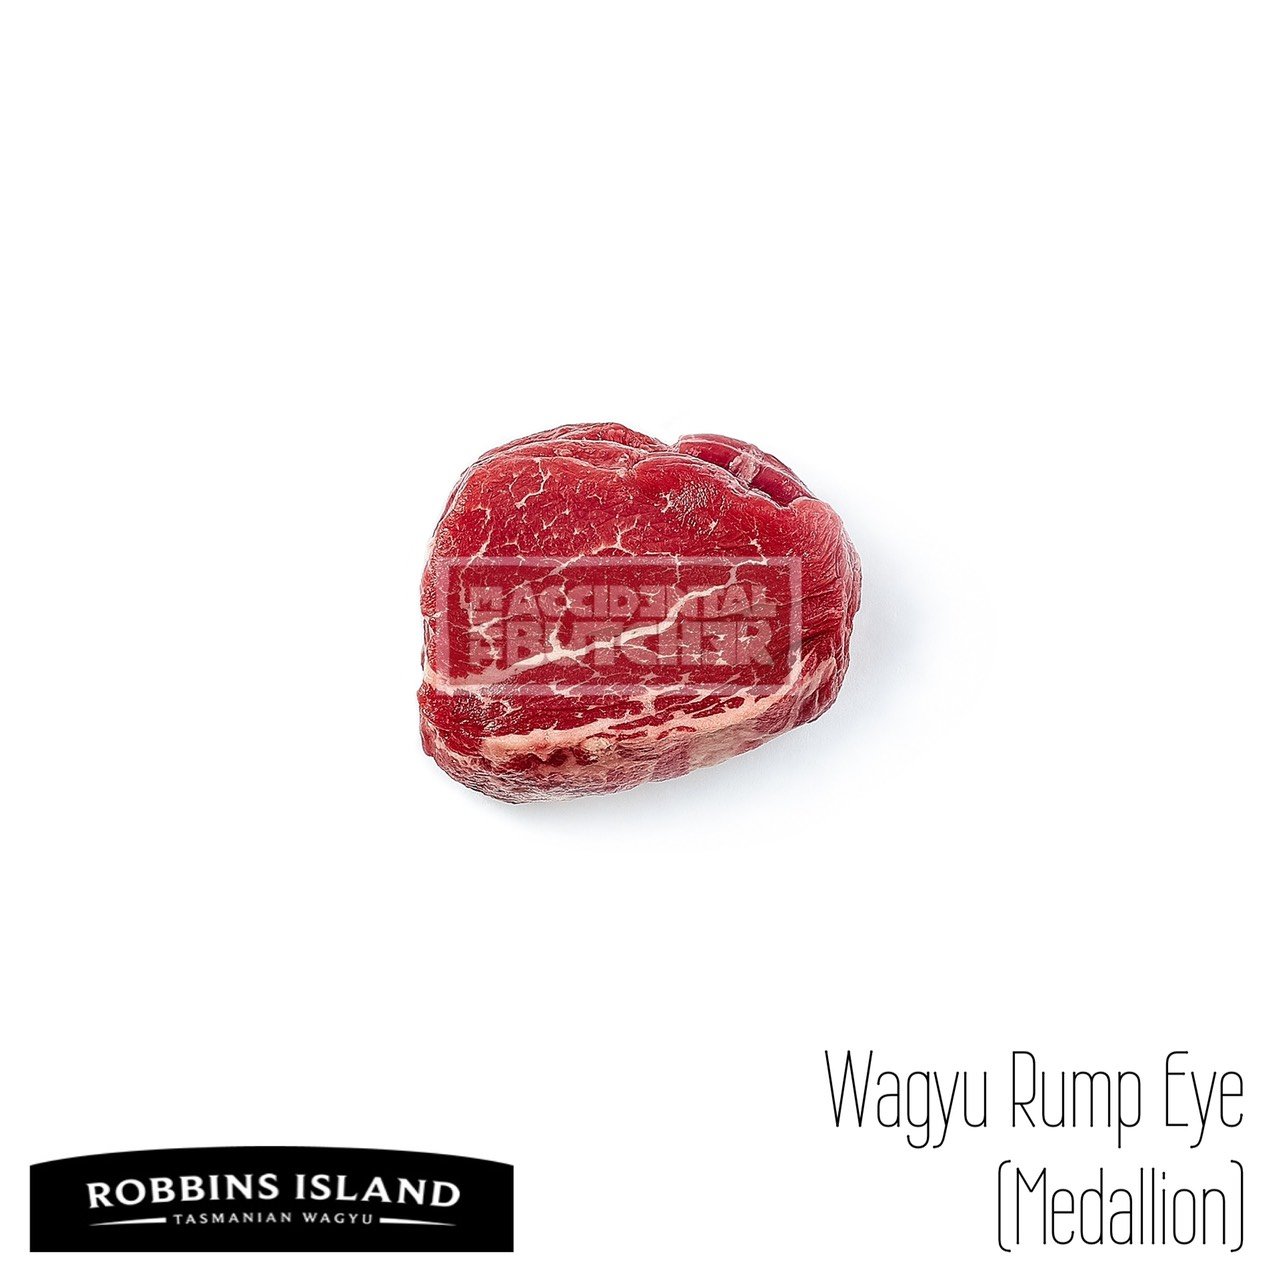 Robbins Island Wagyu Rump Eye MB4-6